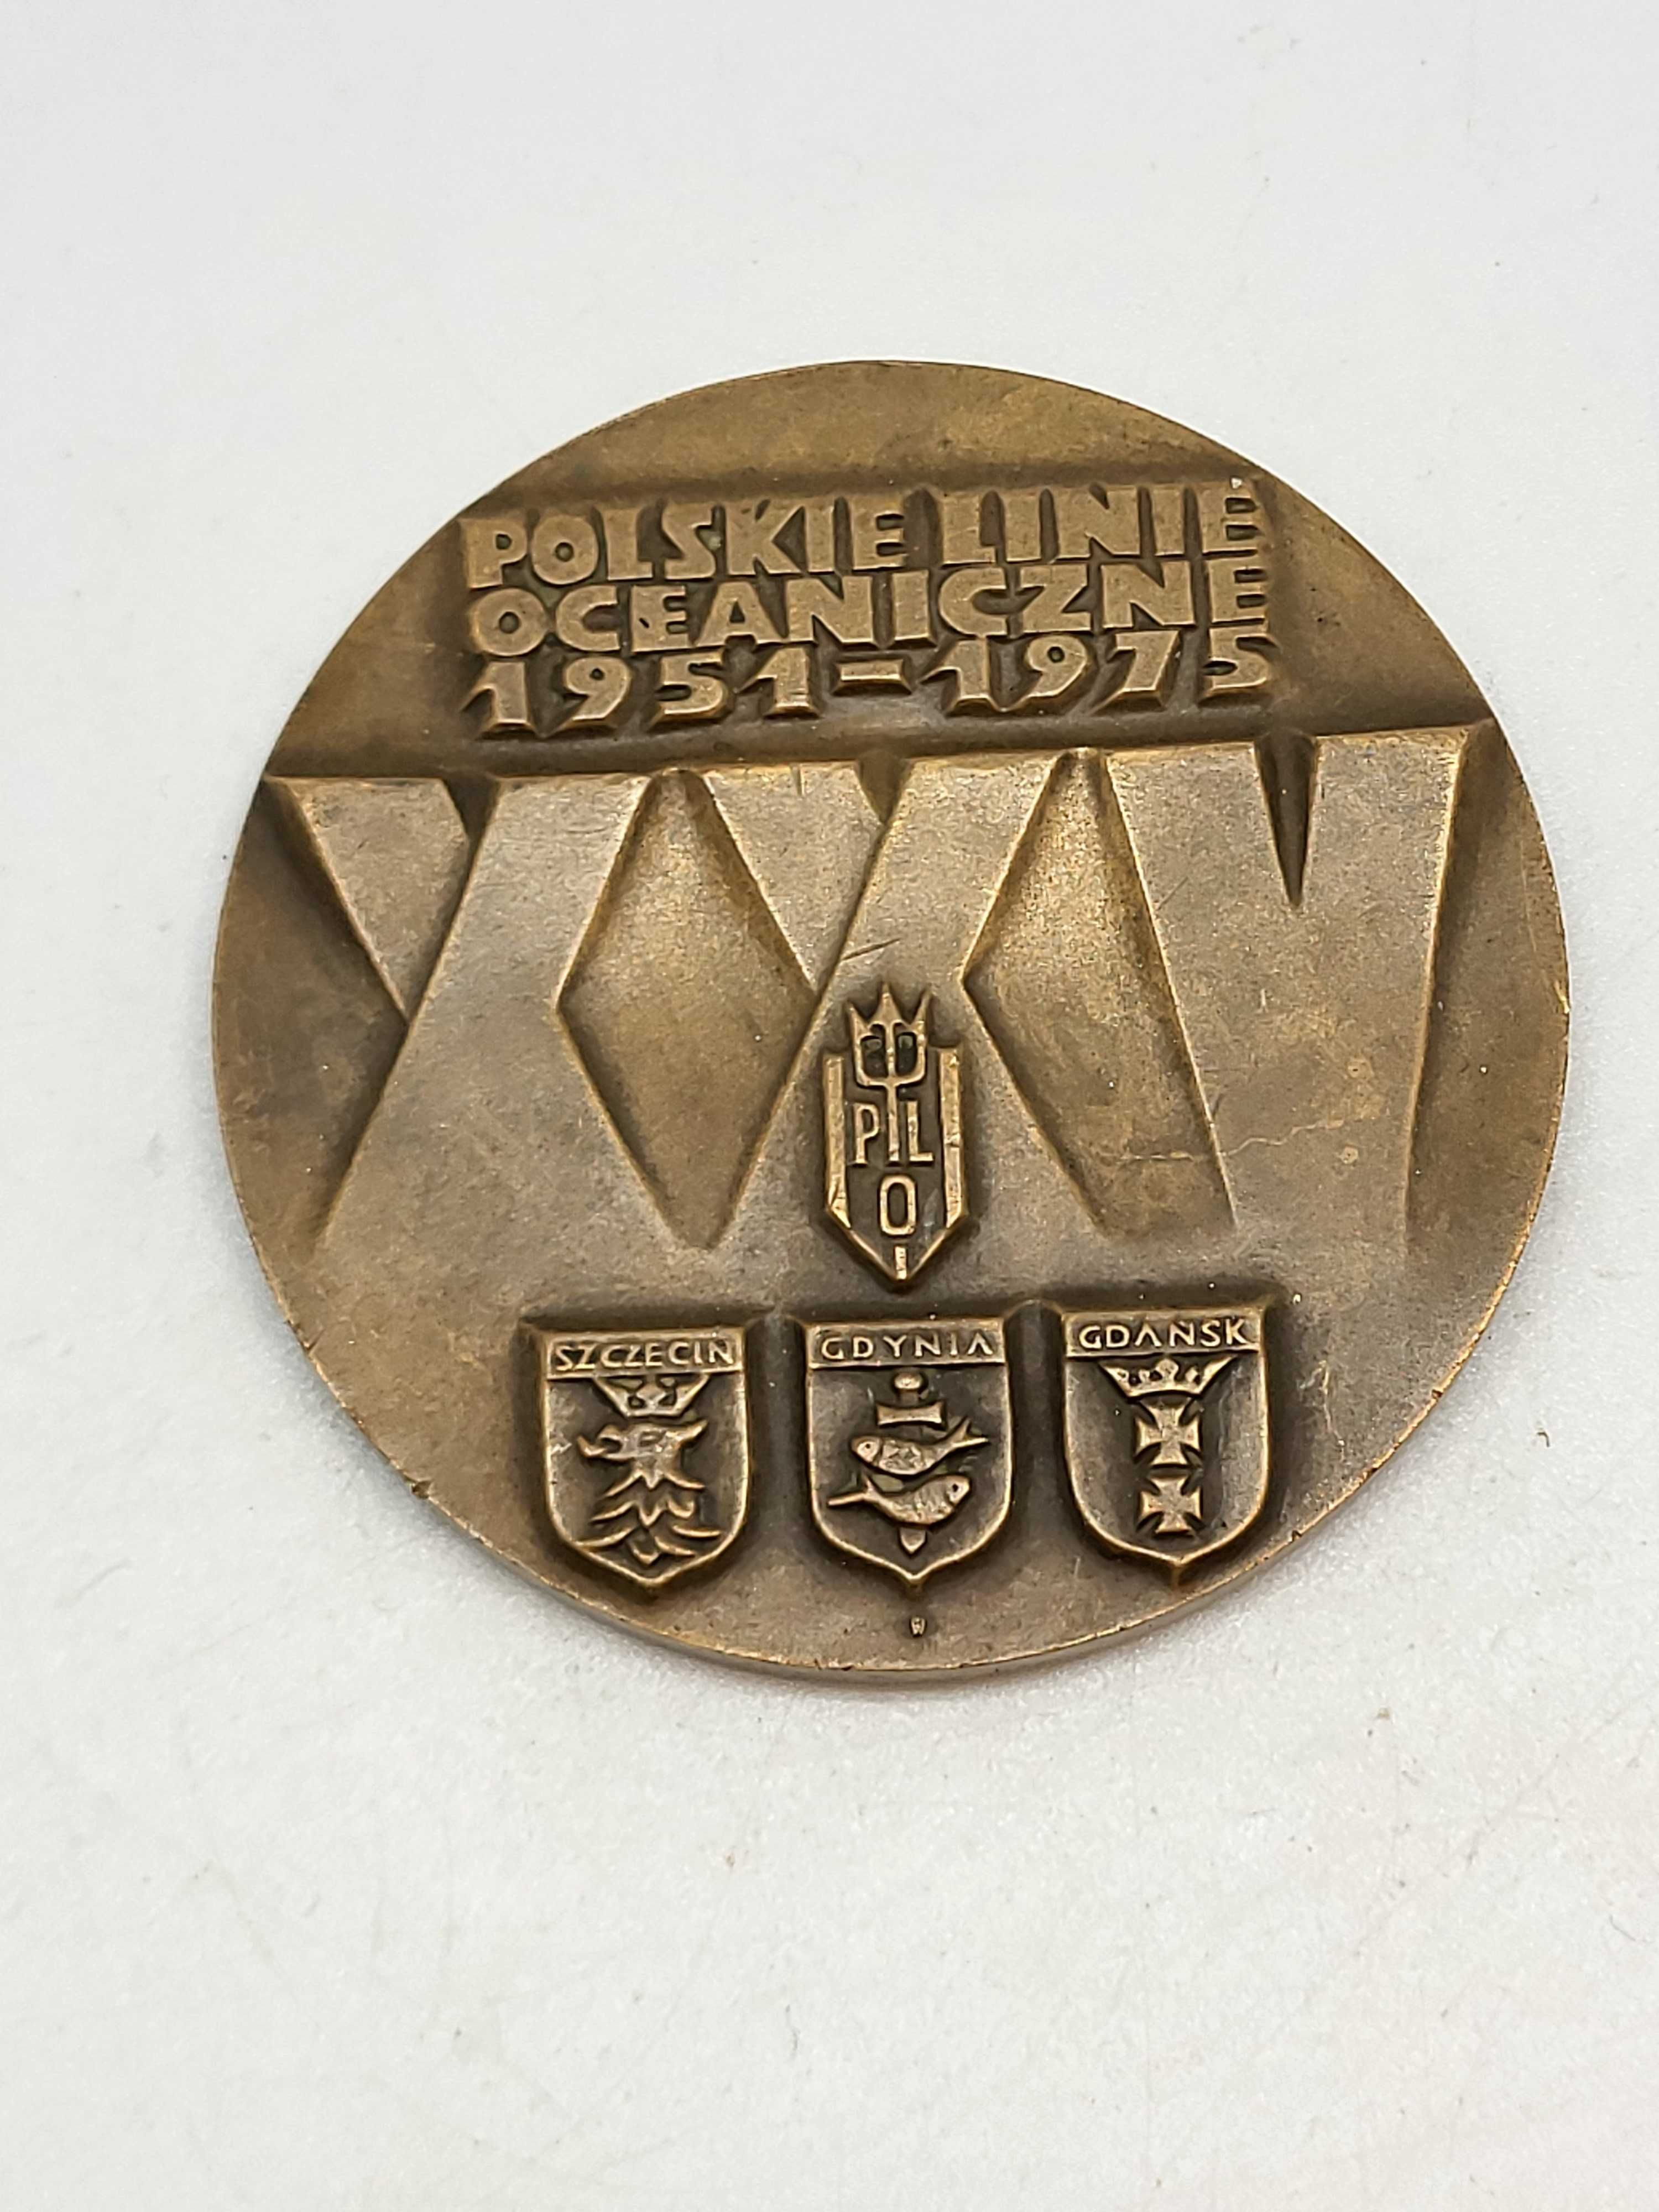 Stary Pamiątkowy Medal Polskie Linie Oceaniczne 1951r 1975r Gdańsk PRL